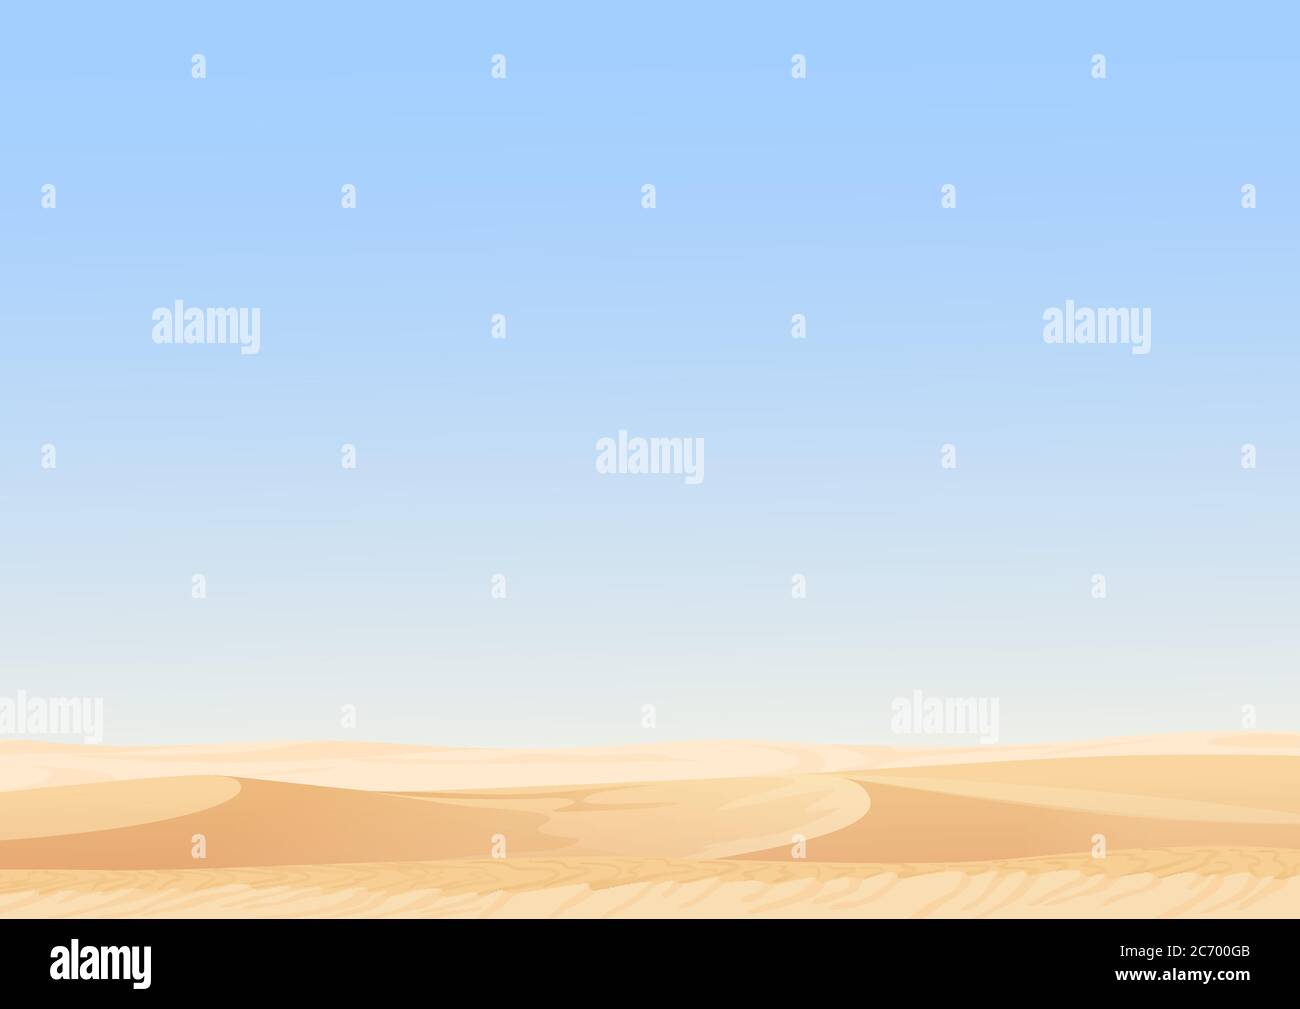 Ciel vide dunes désertiques vecteur paysage égyptien fond. Illustration sable dans la nature Illustration de Vecteur